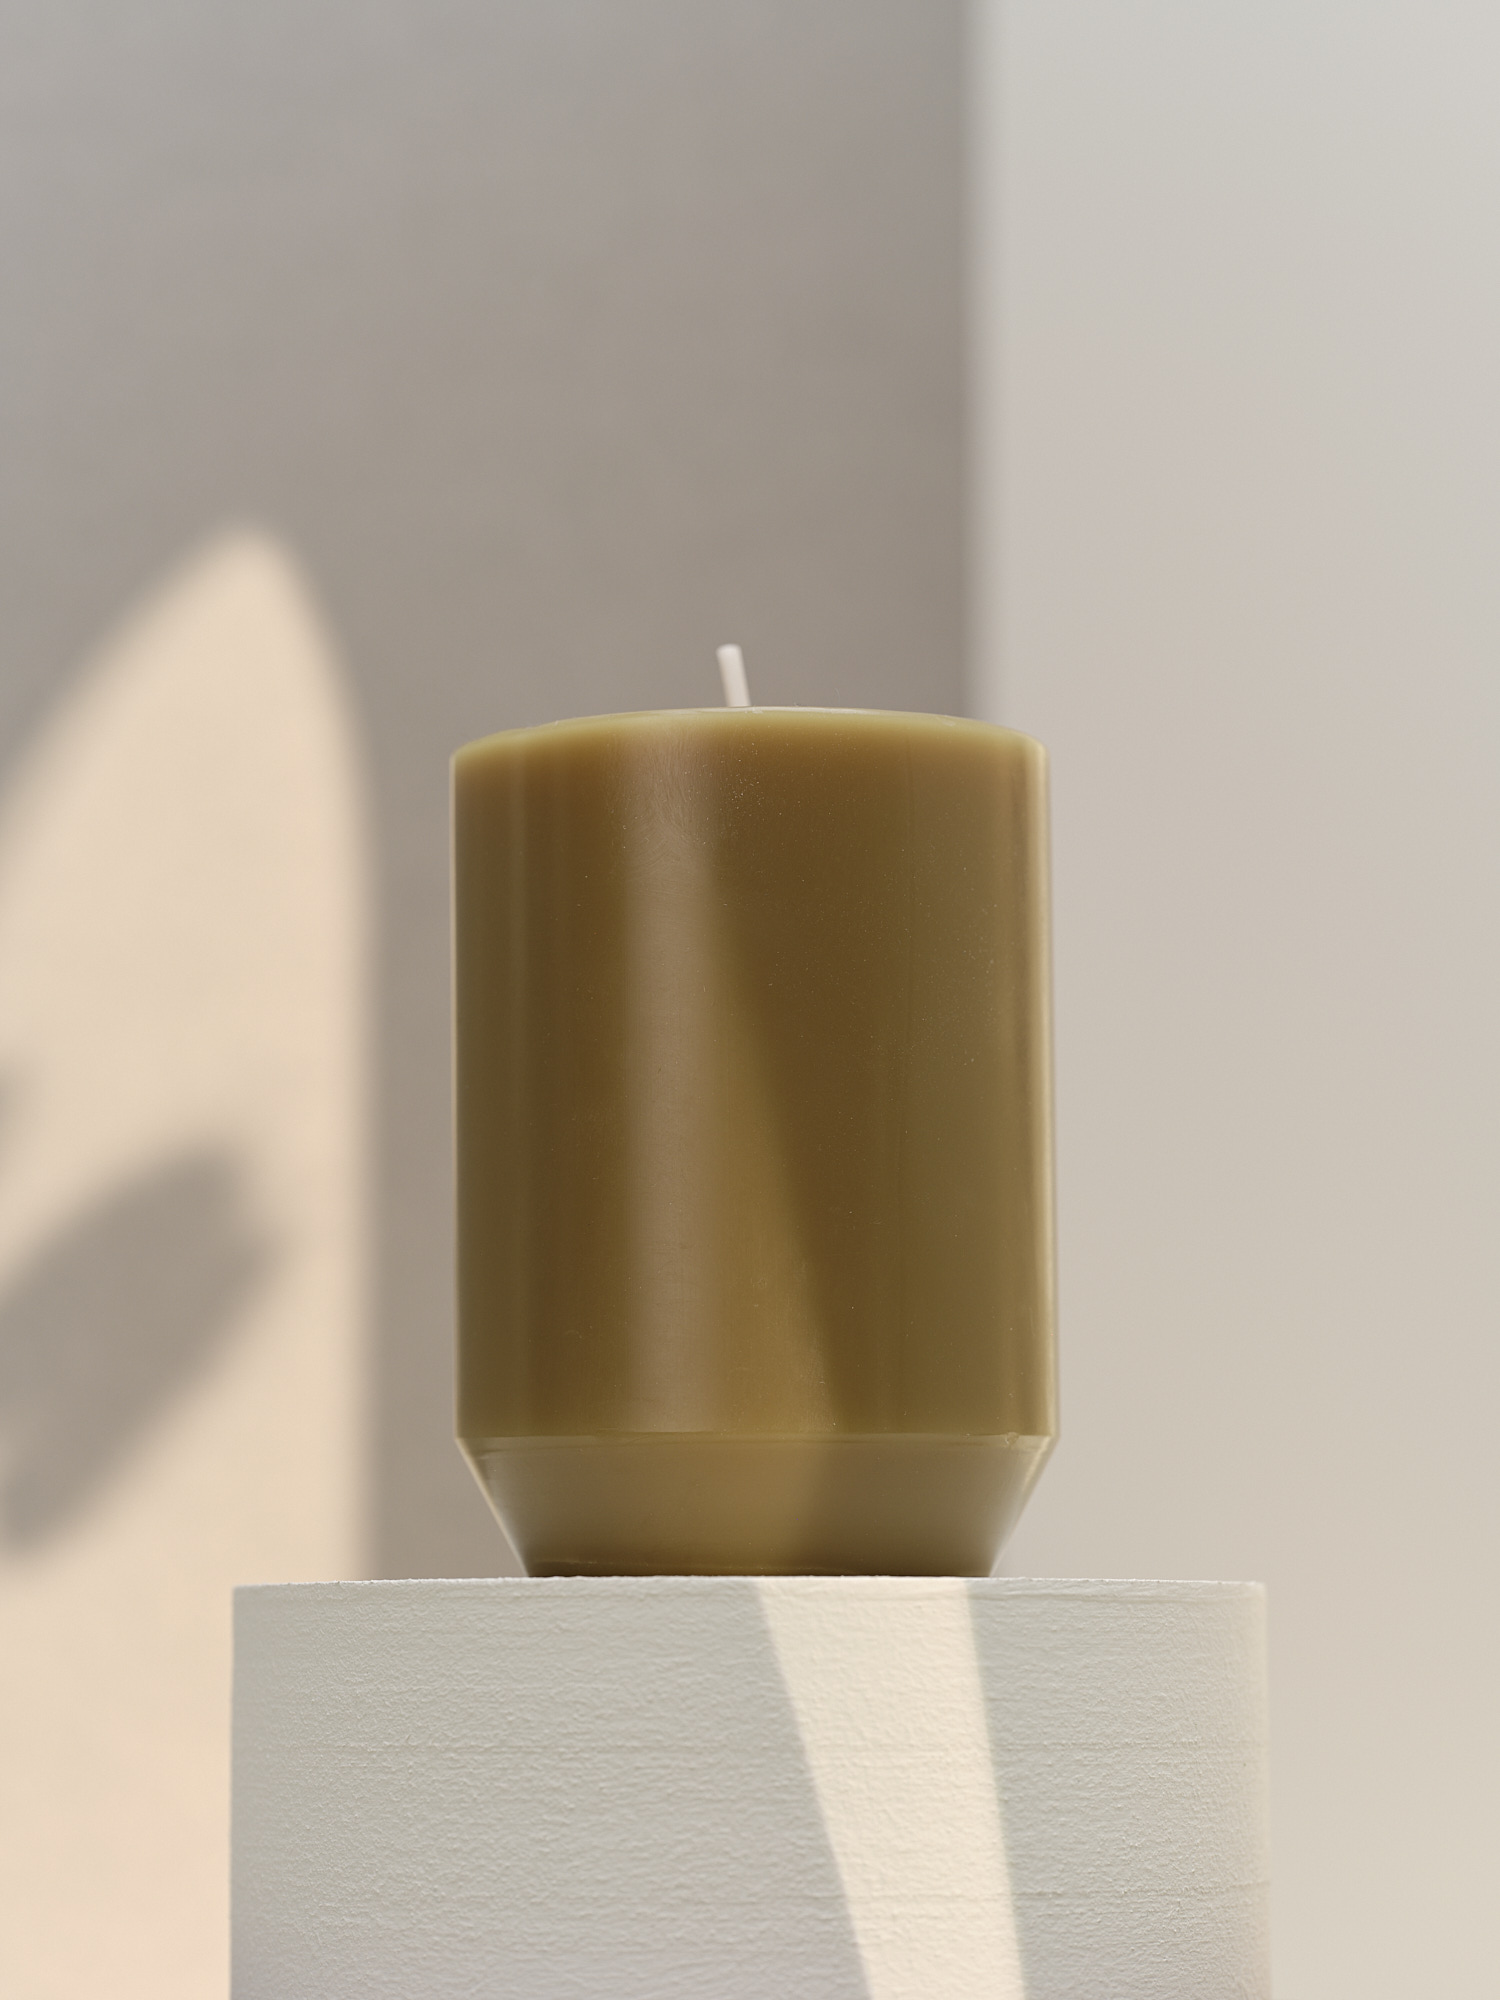 Bougies sont enveloppés dans du cellophane la qualité Allemande Marques de Bougies Bougie Cierge 3 Noir 40 x 6 cm Grands cierges